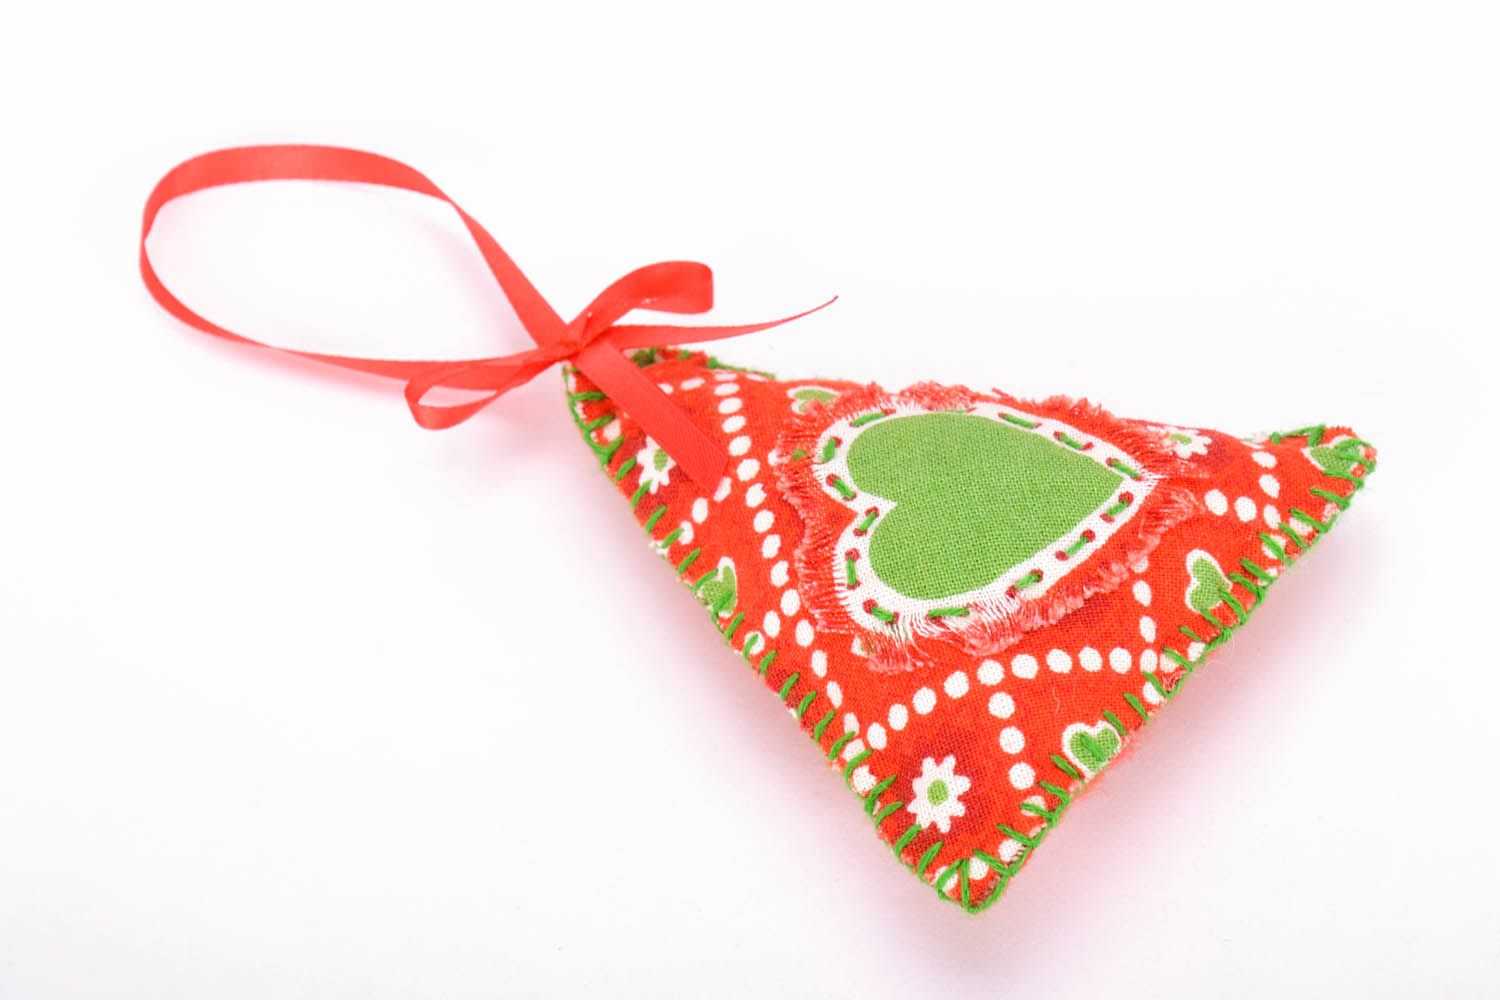 Brinquedo da árvore de Natal costurado de fleece feito em tons vermelhos e verdes foto 2